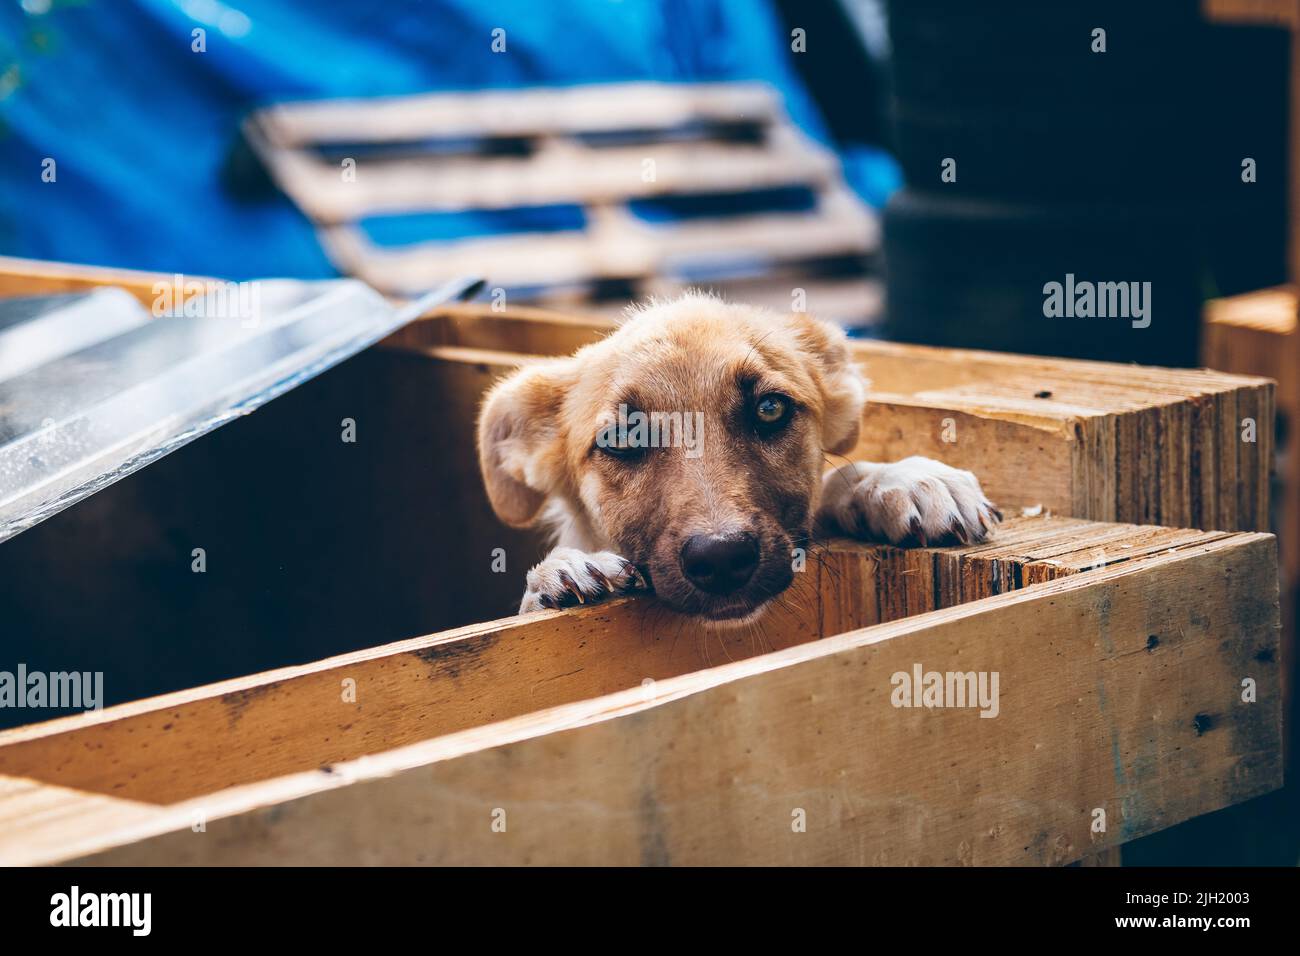 Ein obdachloser Hund wurde von Freiwilligen gerettet, die Tiere in der Ukraine retten. Freiwillige helfen ukrainischen Haustieren. Tierhilfe. Uschhorod, Ukraine Stockfoto